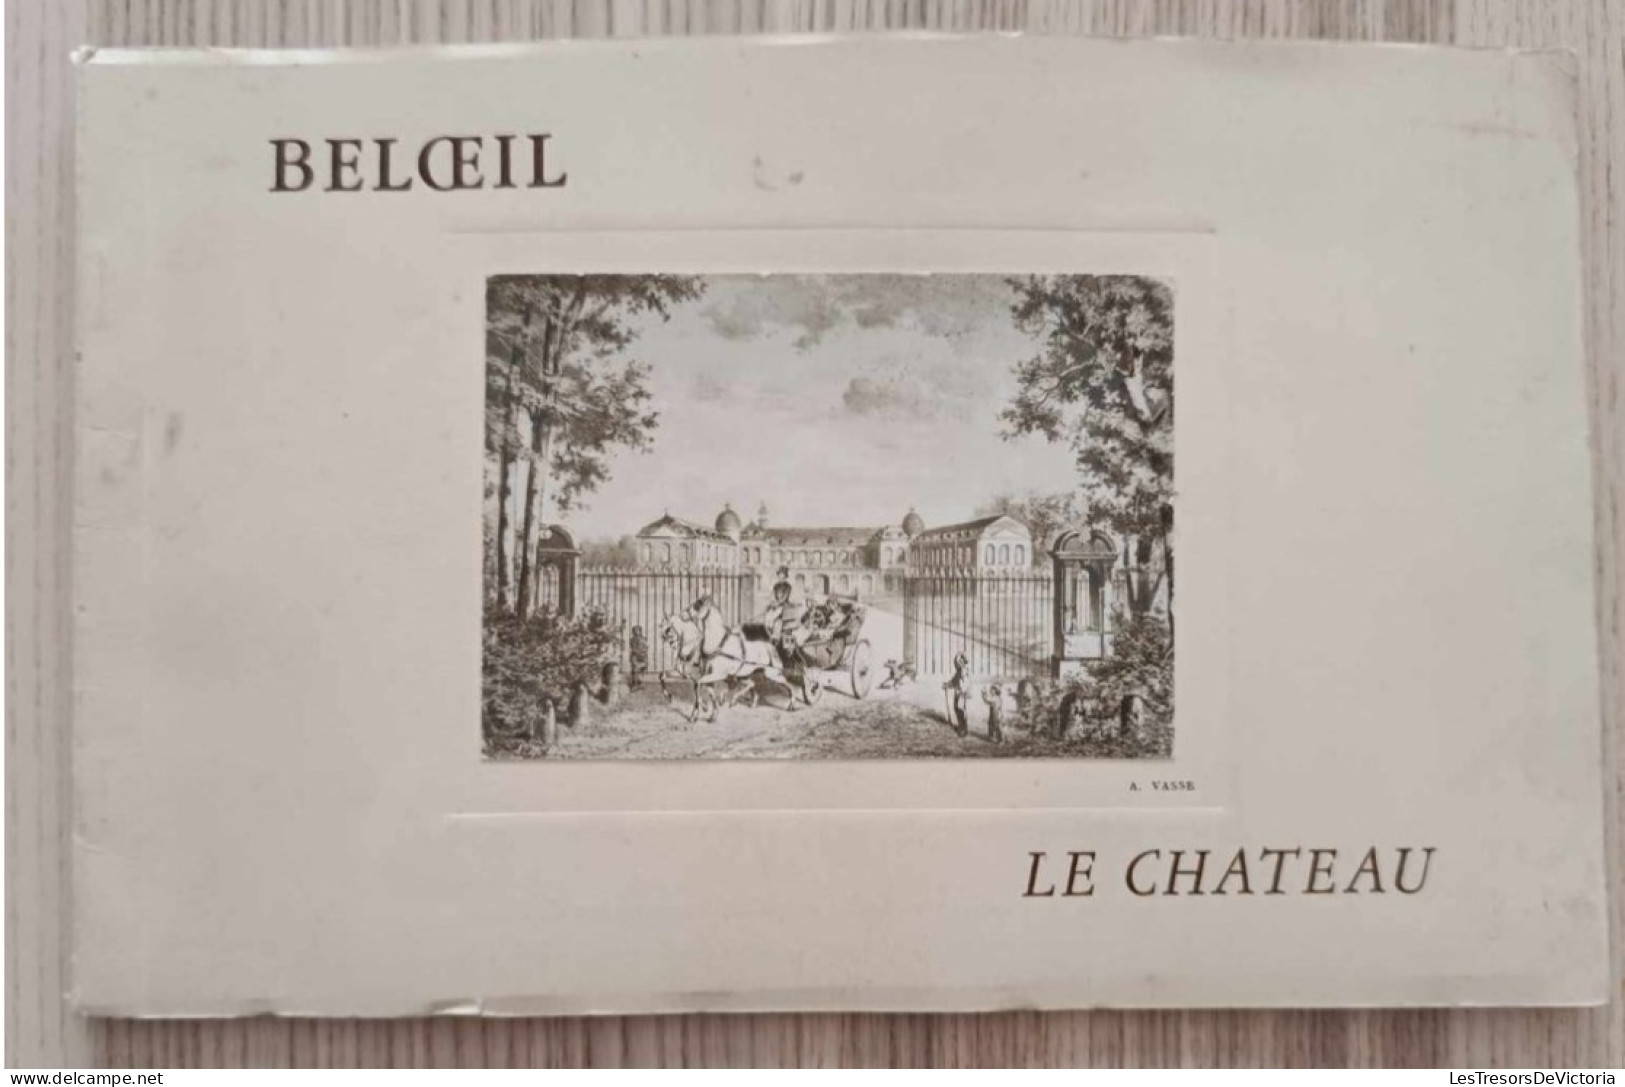 Livre - Beloeil - Le Chateau - Description Illustrée De La Demeure Des Princes De Ligne à Beloeil - Geographie